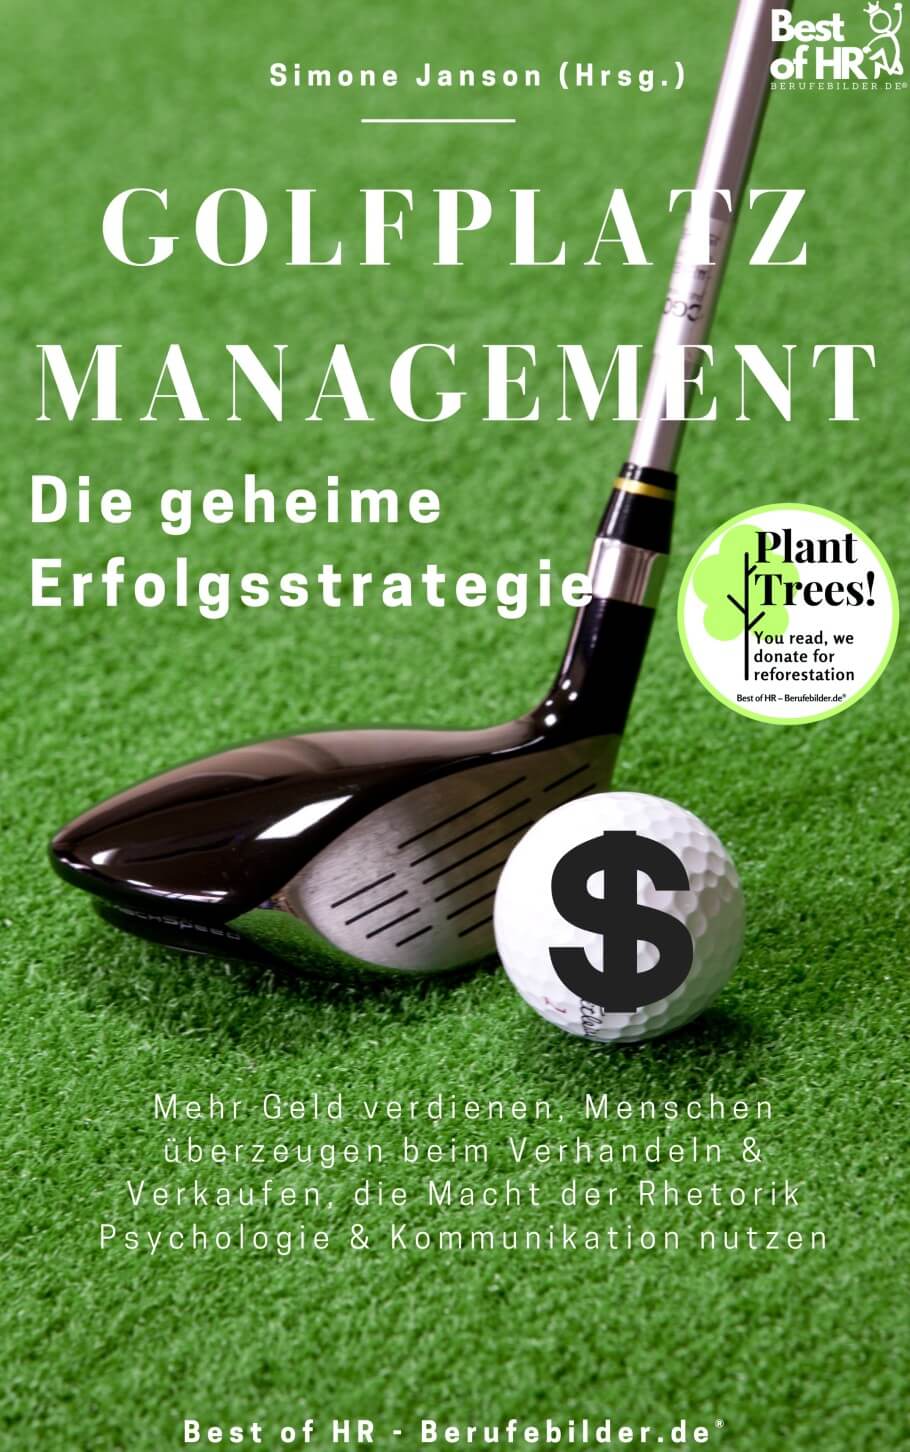 Golfplatzmanagement – die geheime Erfolgsstrategie